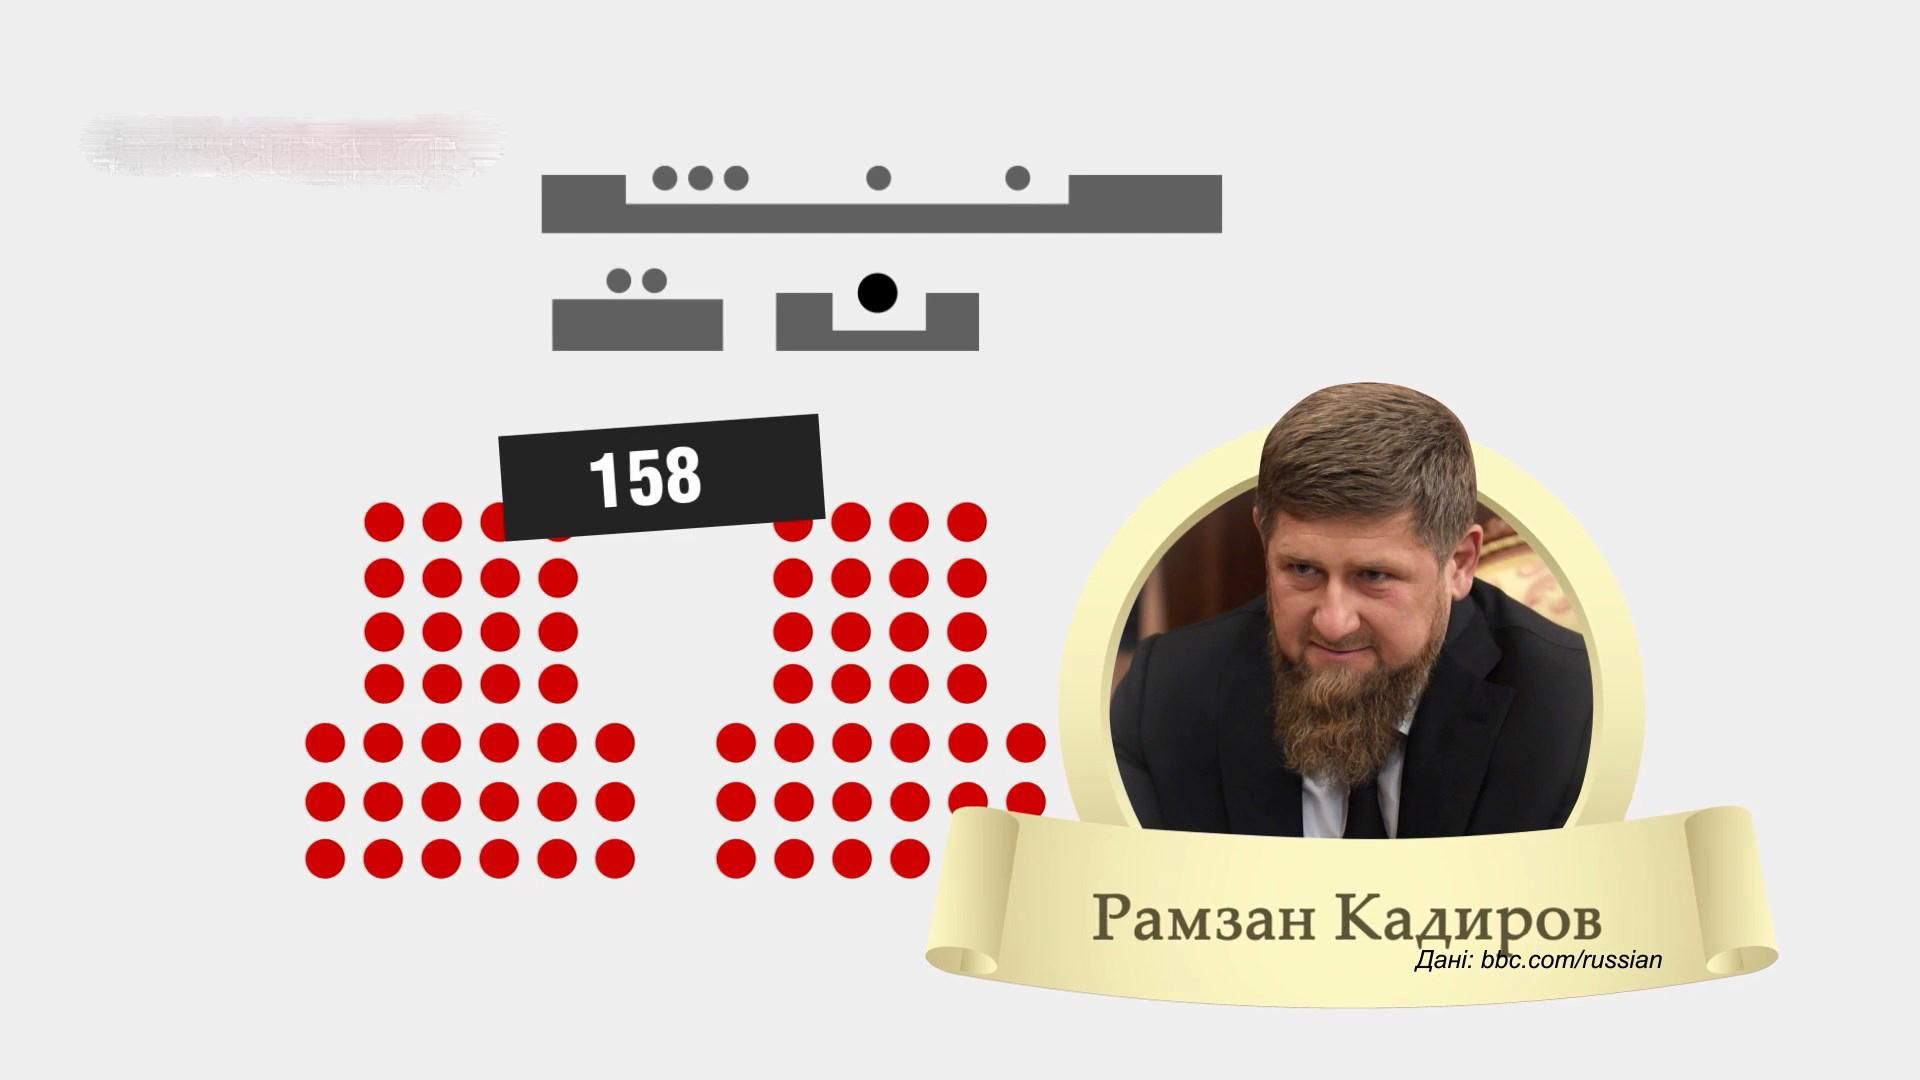 "Дорогие братья": сколько друзей и родственников Кадырова работают в его администрации